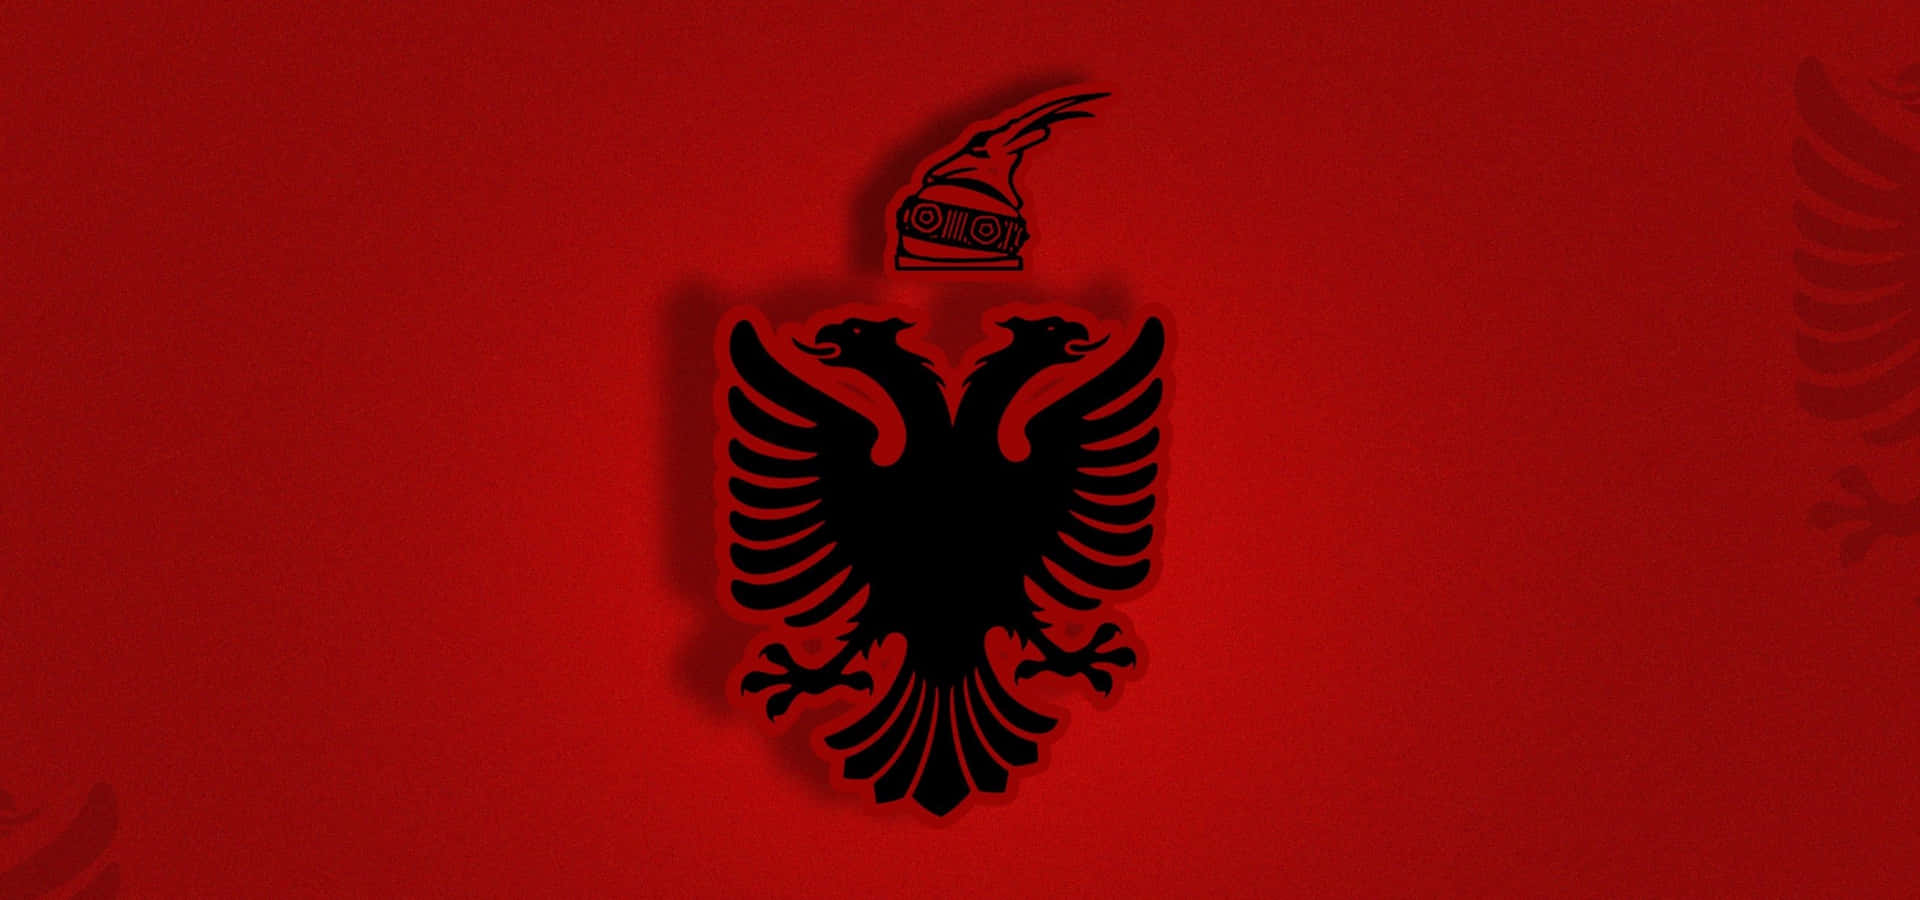 Nyddet Maleriske Skønhed I Albanien.